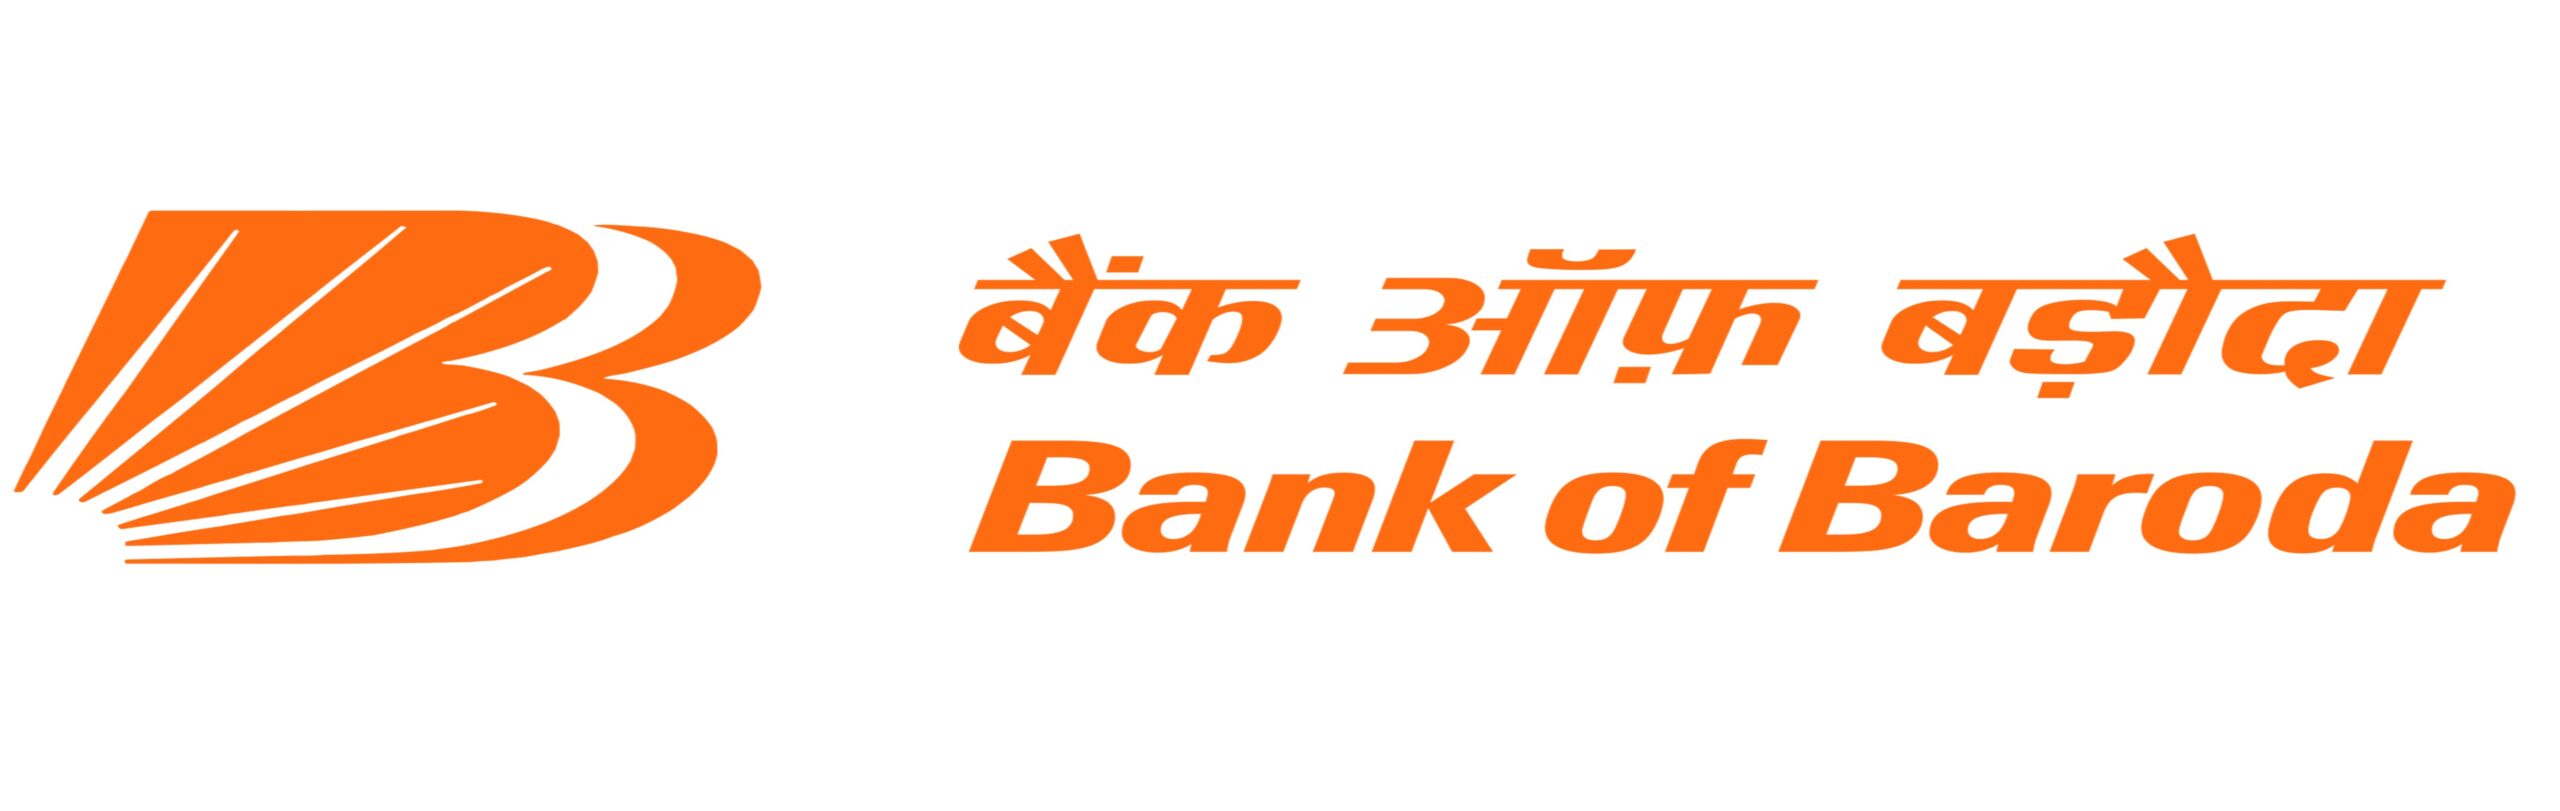 Prasanna Express packer's client -Bank of baroda